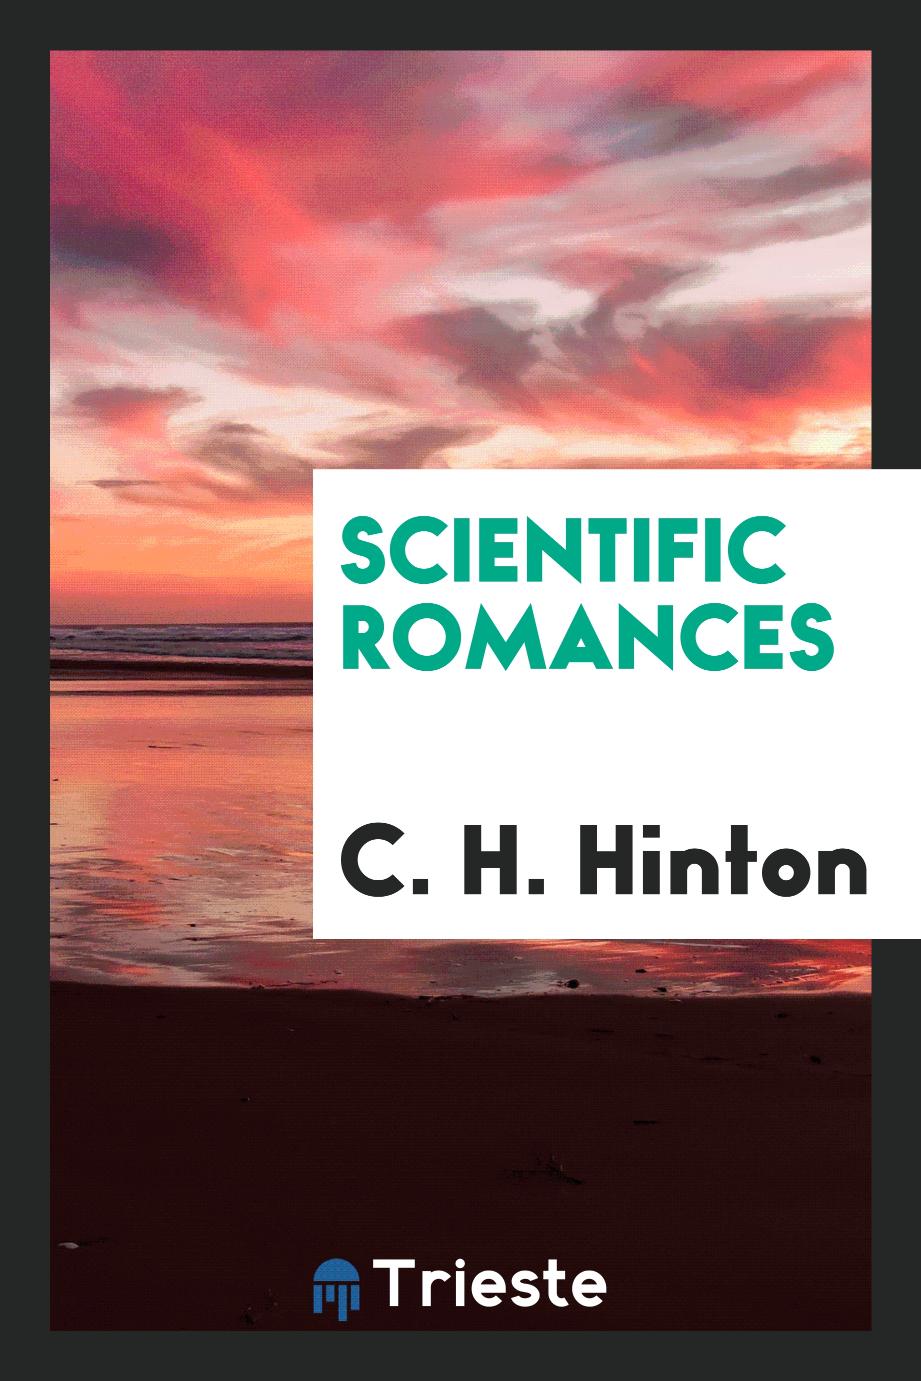 Scientific romances